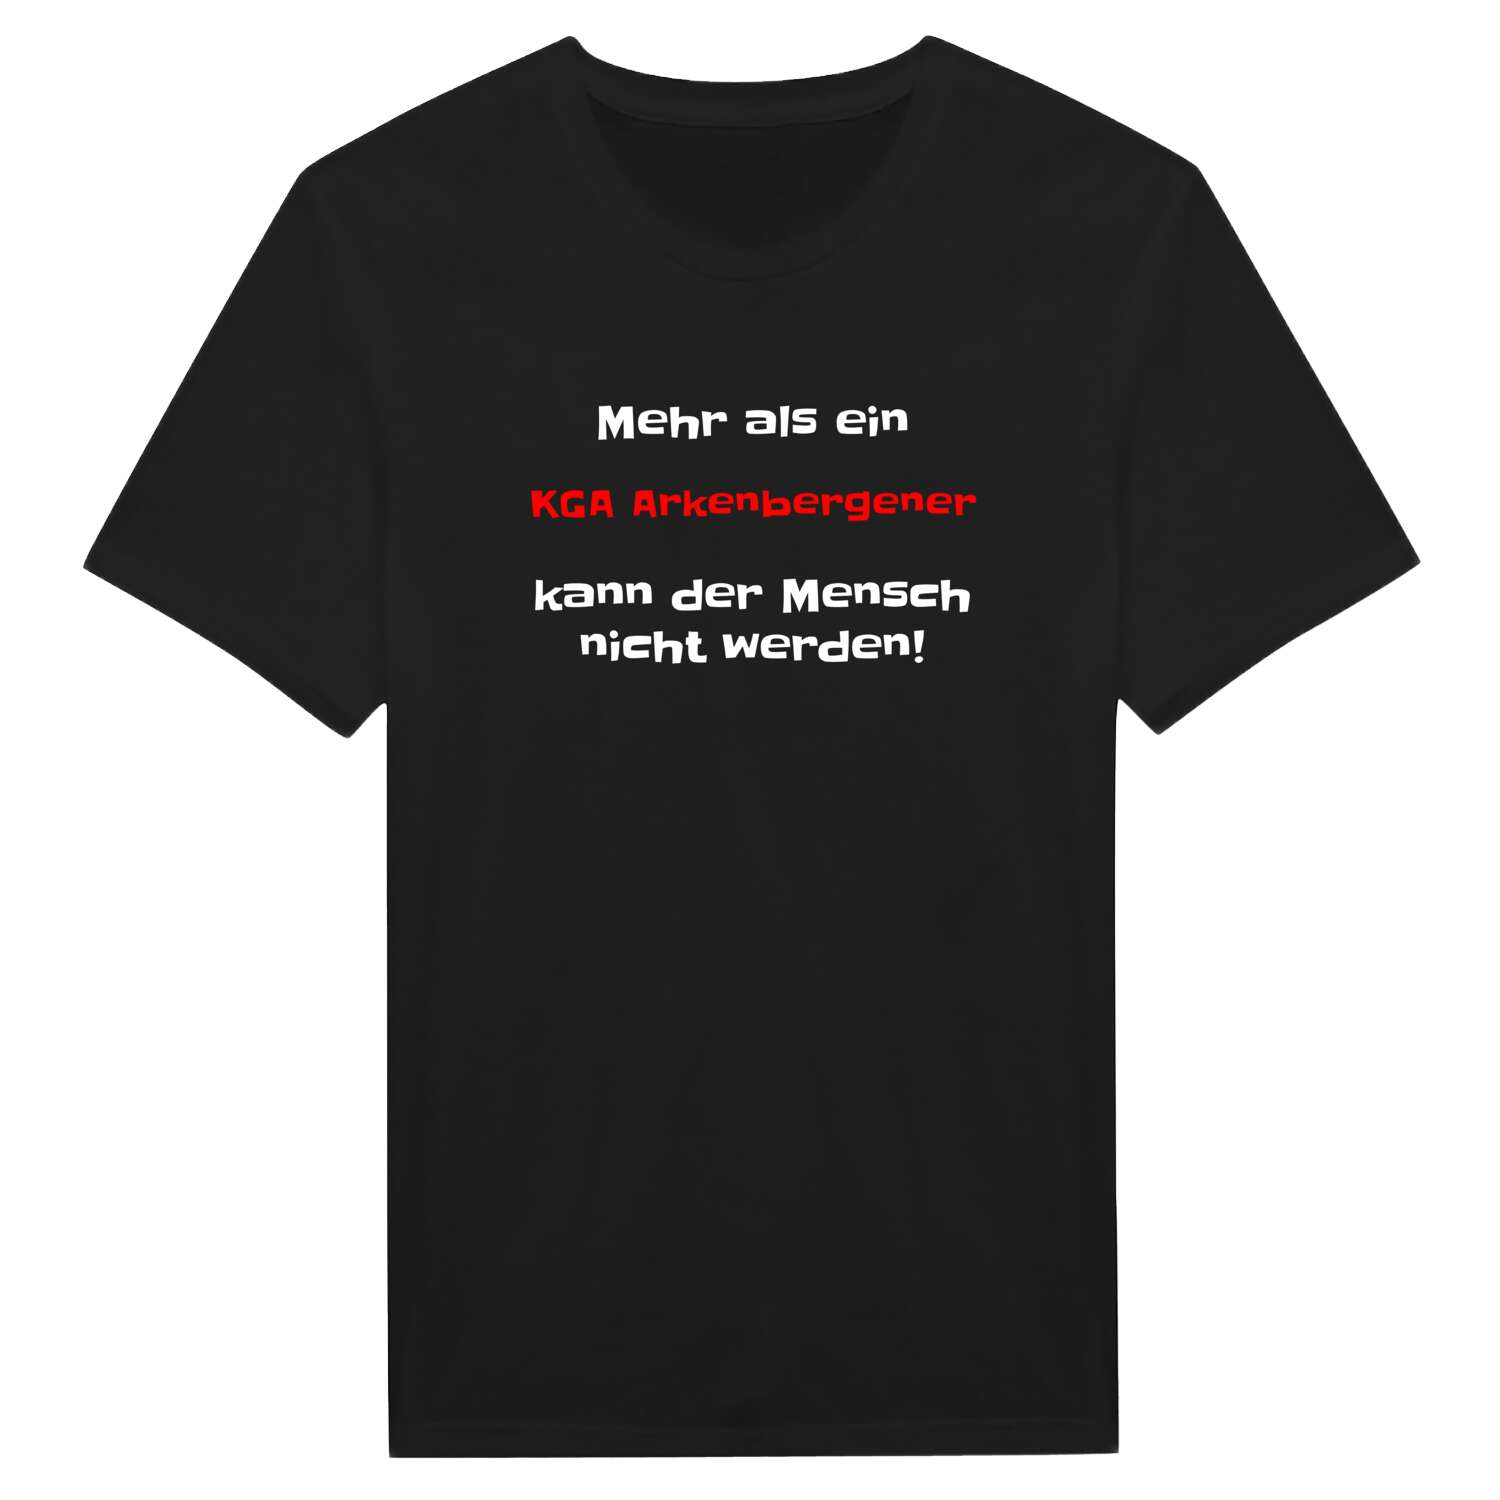 KGA Arkenberge T-Shirt »Mehr als ein«